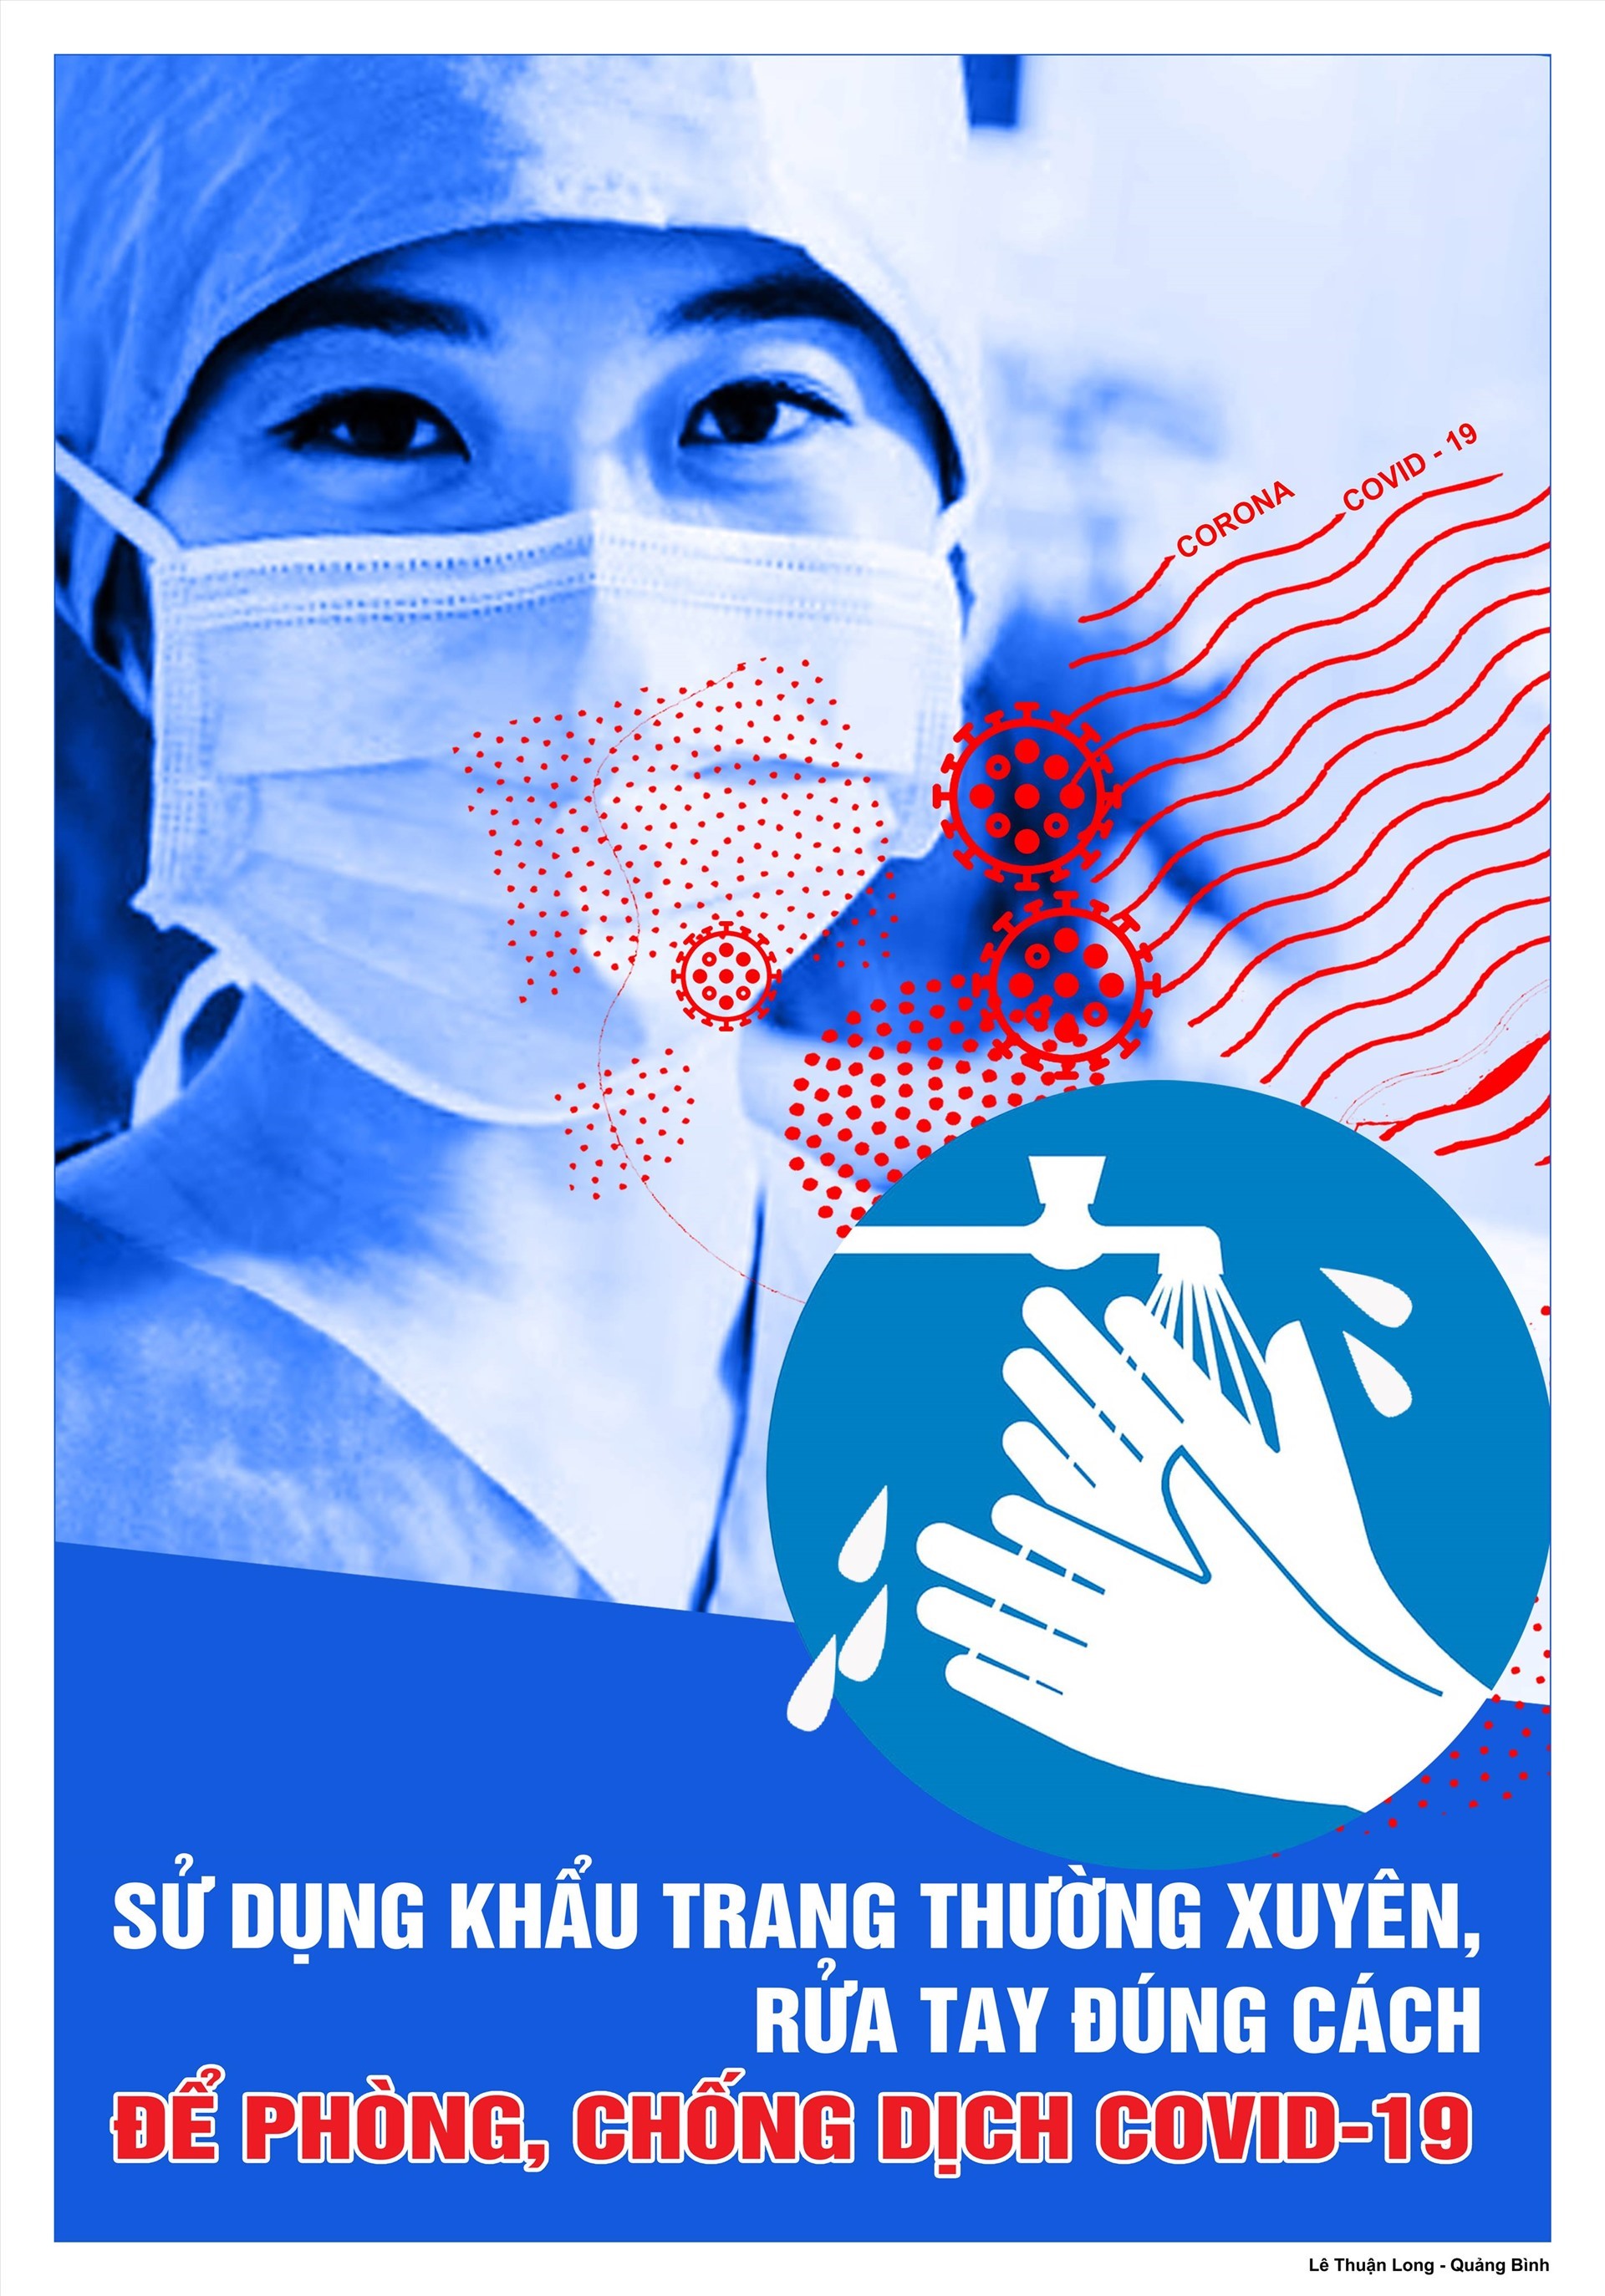 Tác phẩm lọt vào vòng 14 tác phẩm xuất sắc nhất cuộc thi vẽ tranh cổ động phòng chống dịch COVID - 19 của họa sĩ Lê Thuận Long. Ảnh: K.S